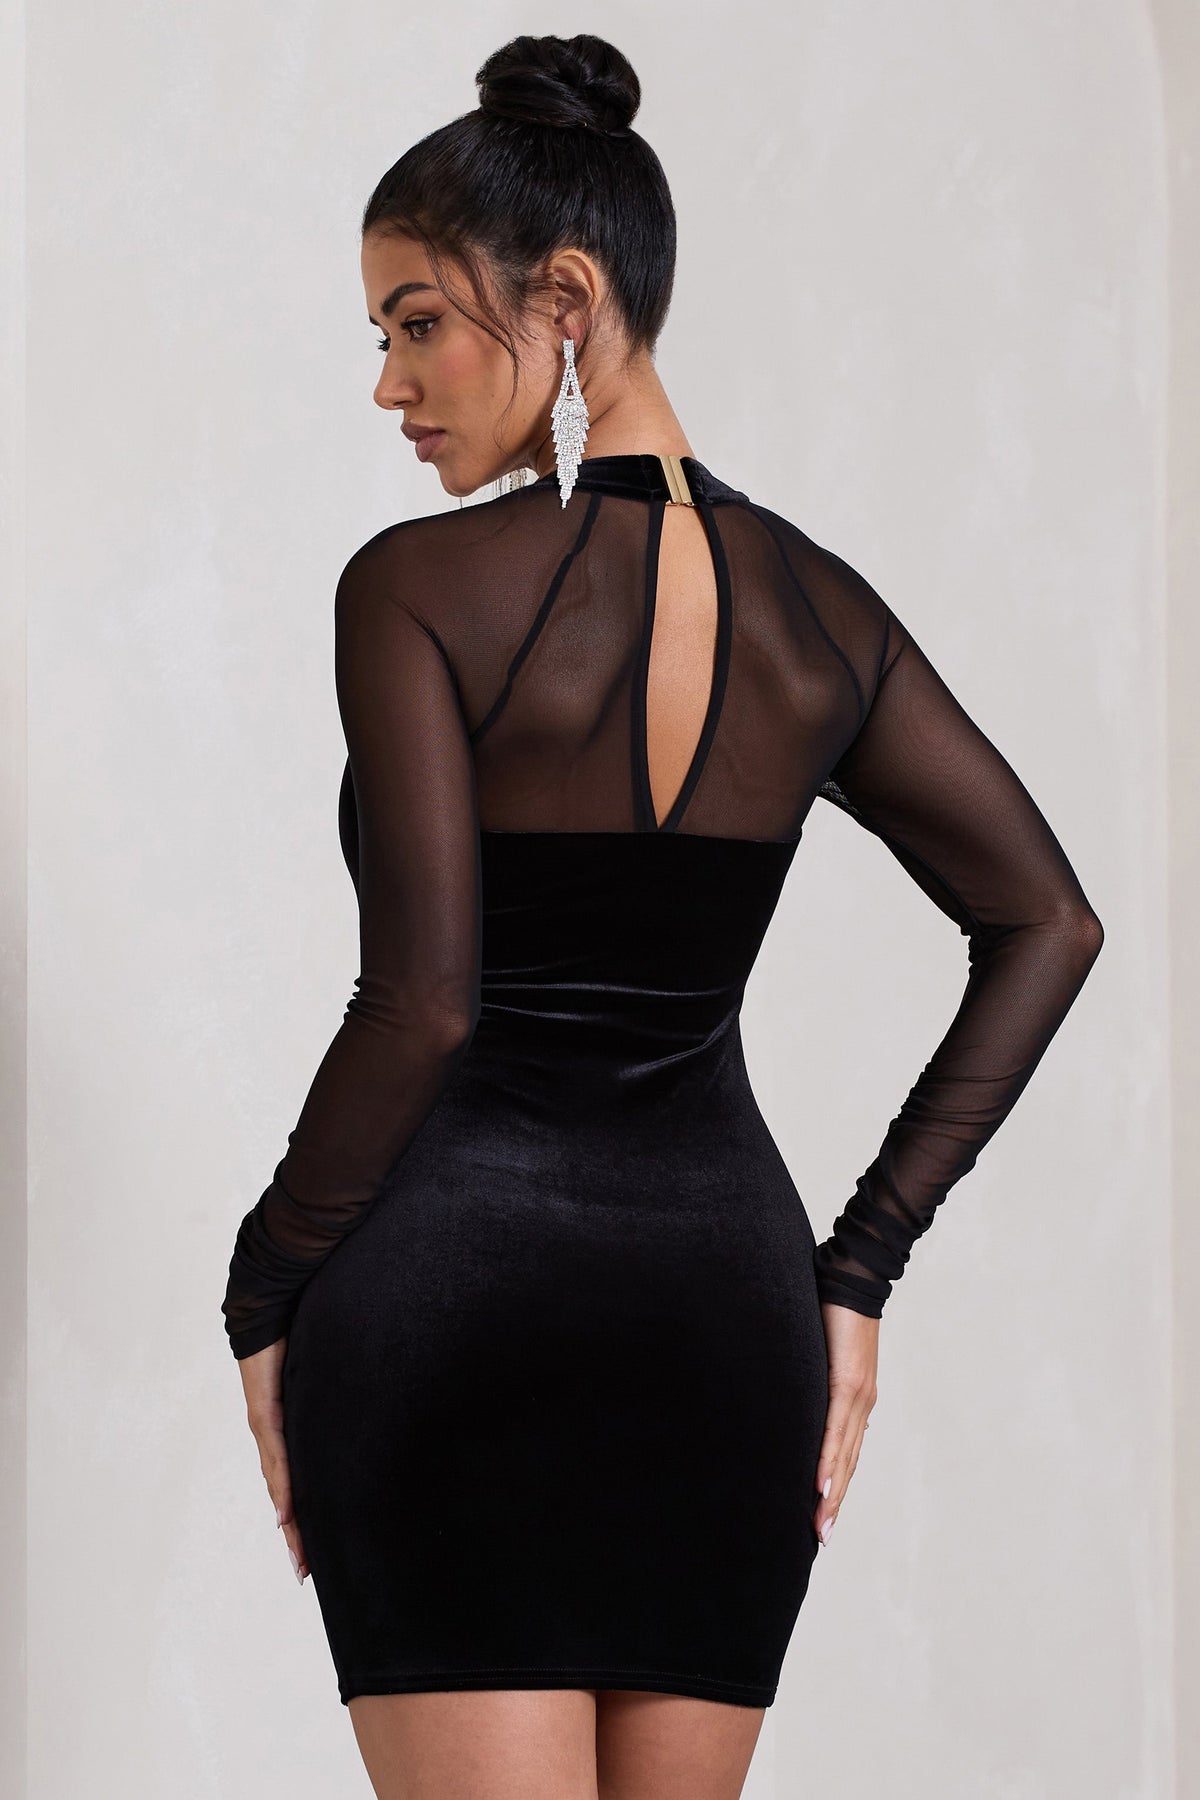 Off-Piste Black Velvet Bodycon Mini Dress With Sheer Sleeves